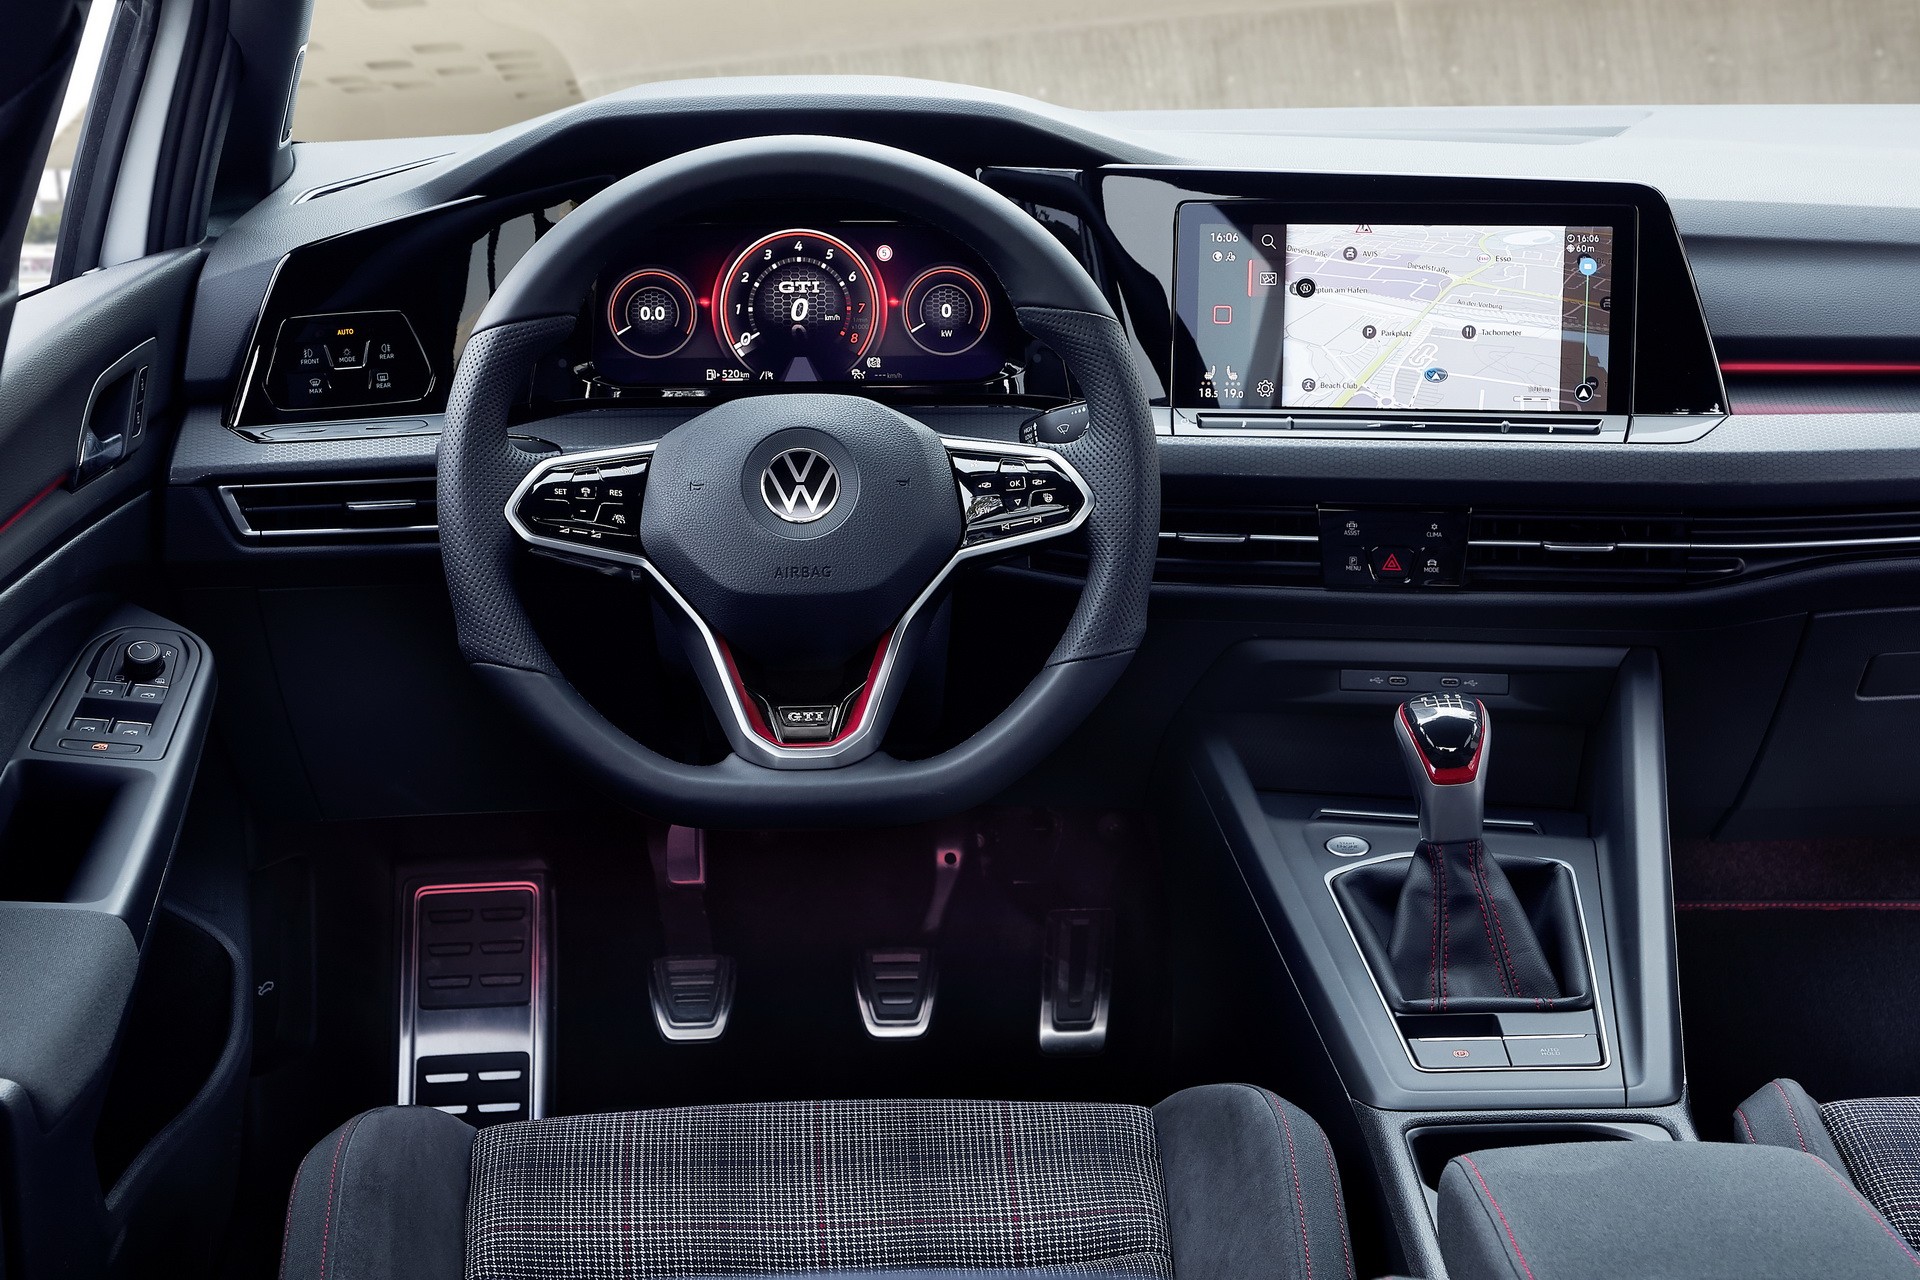 2021 Volkswagen Golf GTI Configurator Launched, Huge Photo Gallery Is ...